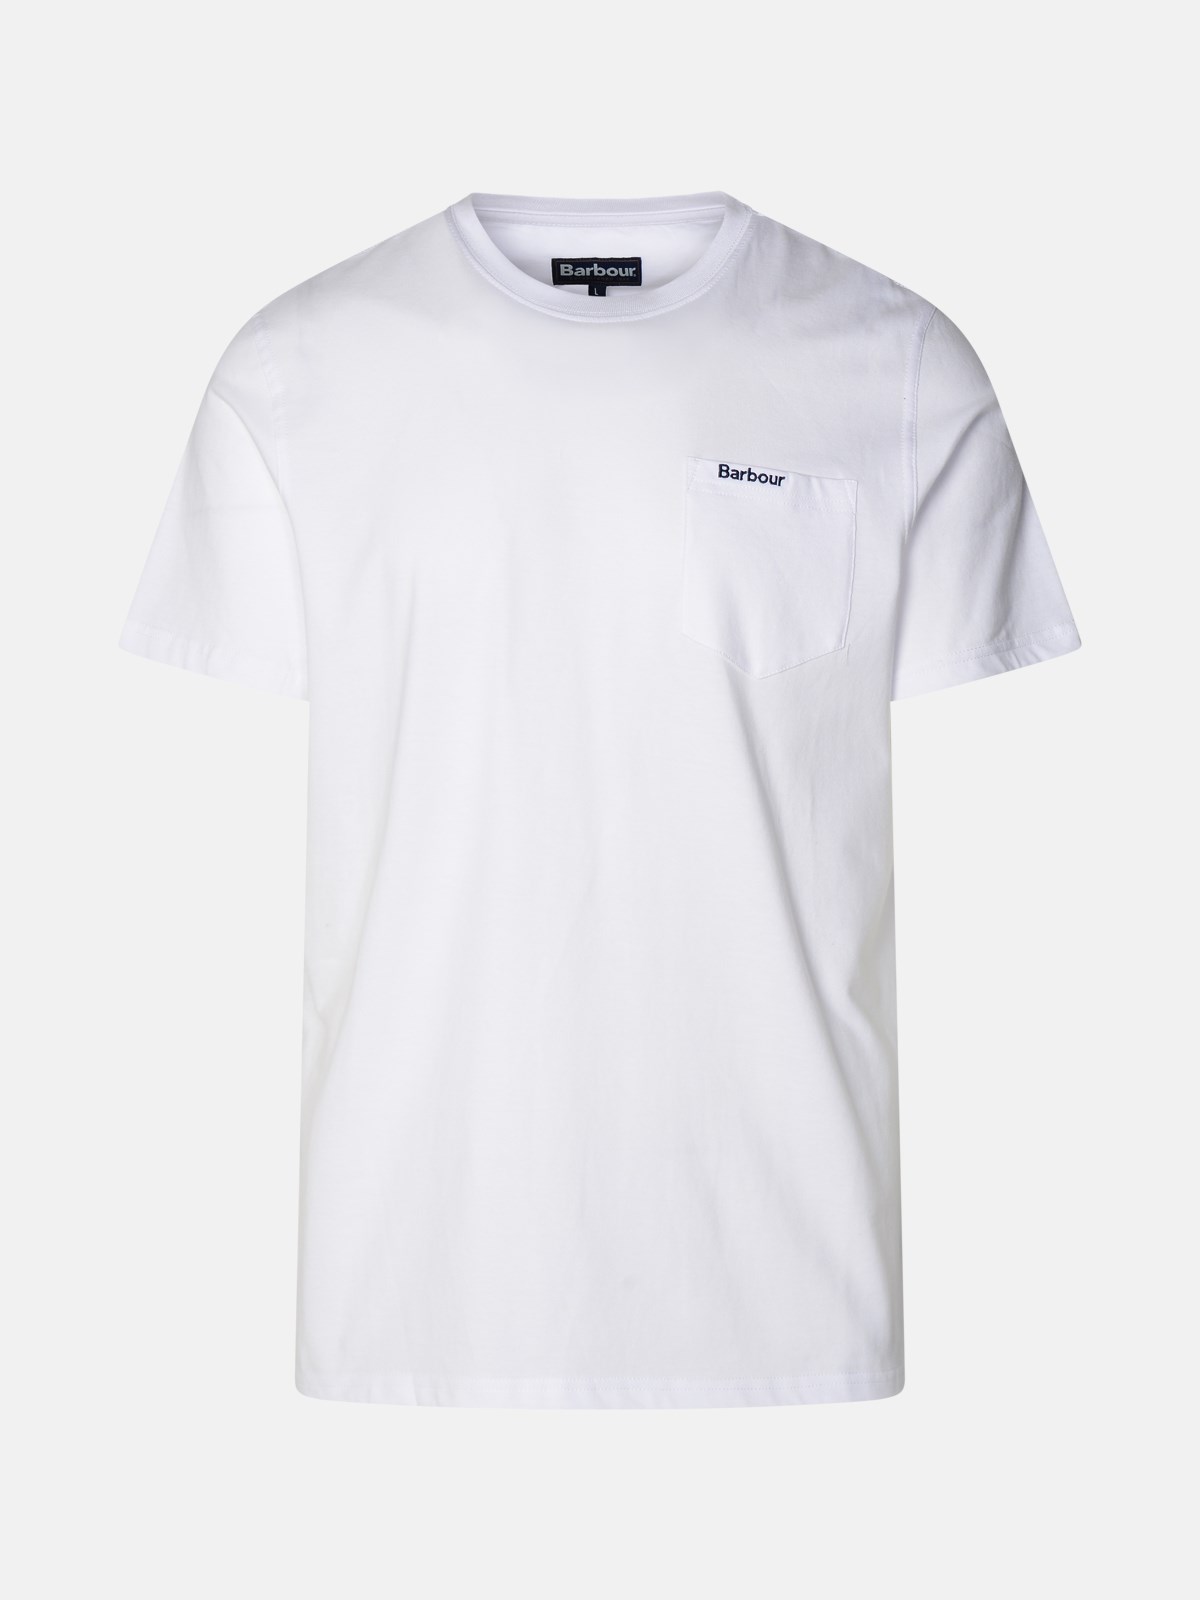 Shop Barbour White Cotton T-shirt